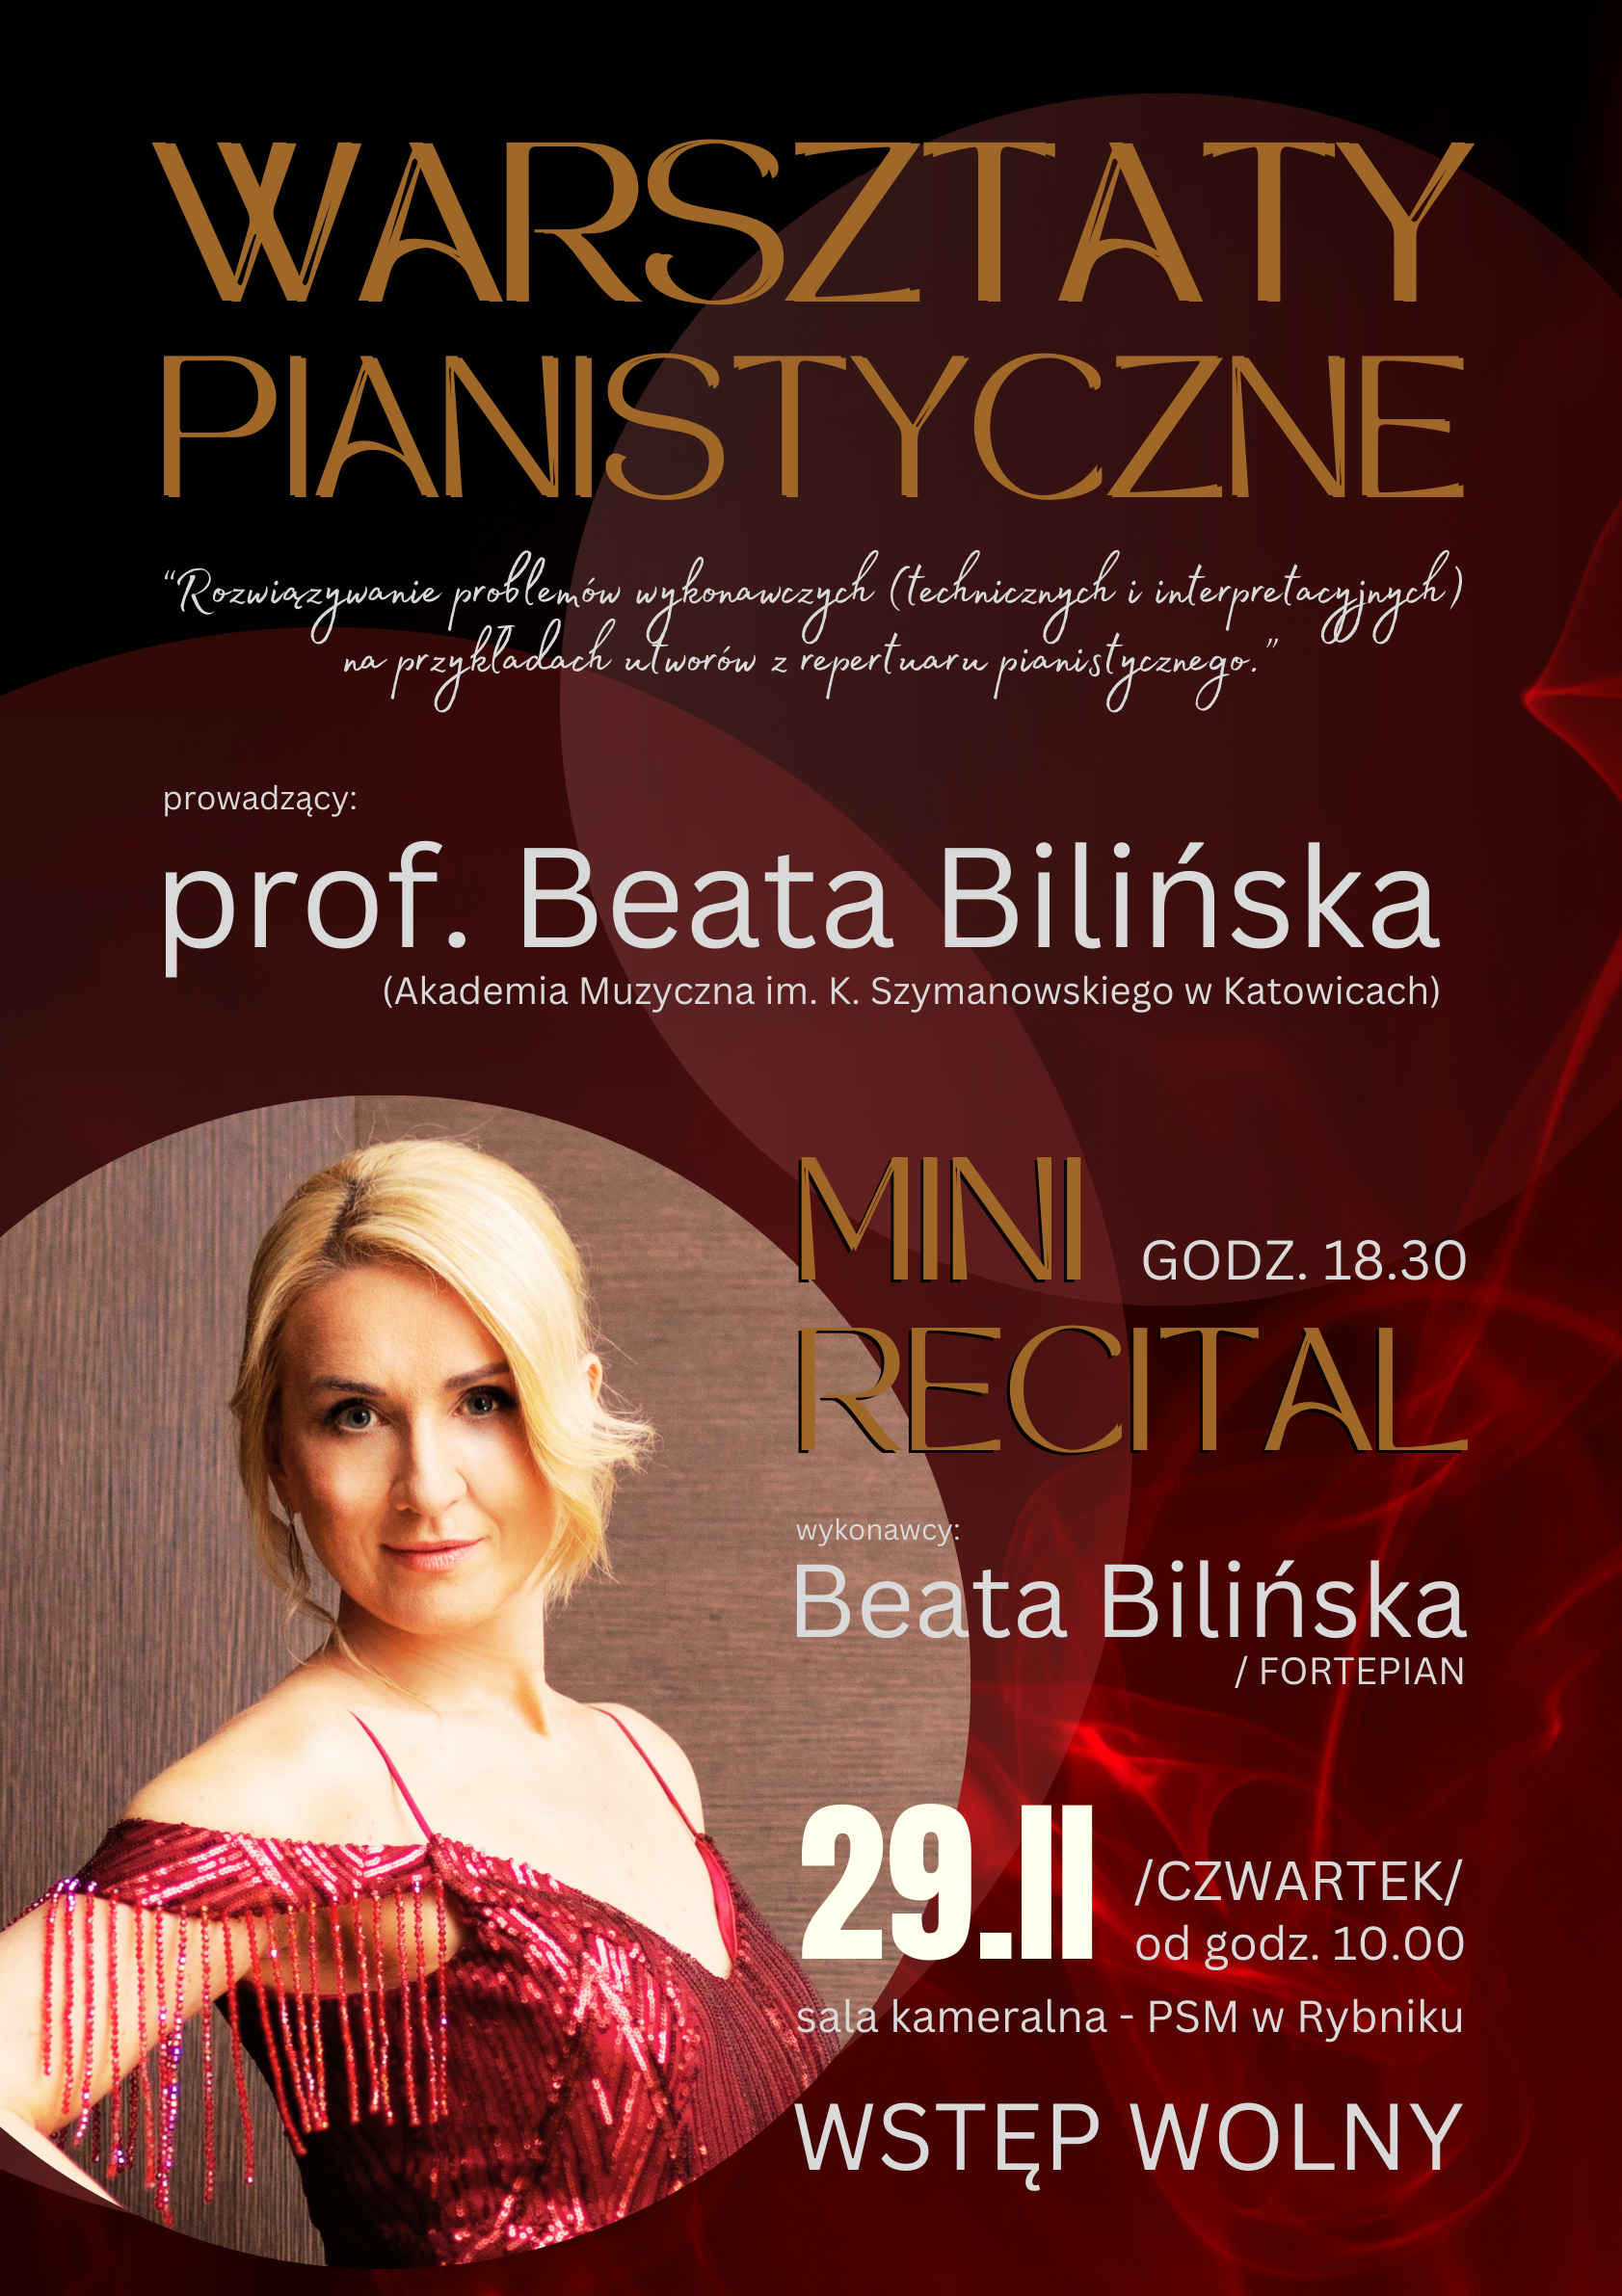 PLAKAT warsztaty pianistyczna z prof. Beatą Bilińską